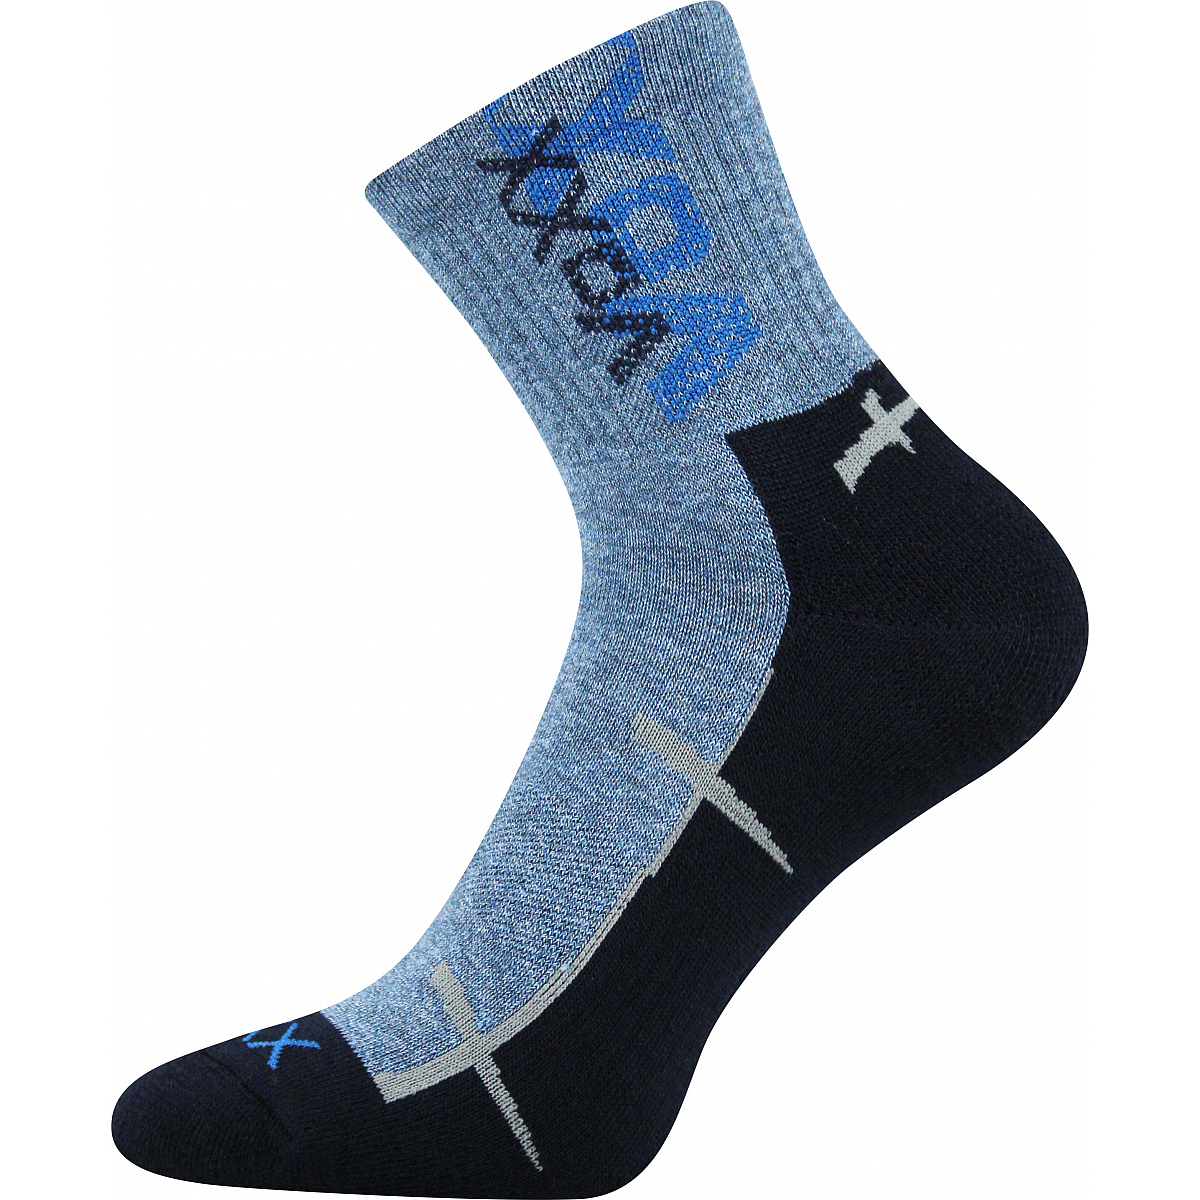 Sportovní ponožky Voxx Walli - modré, 35-38